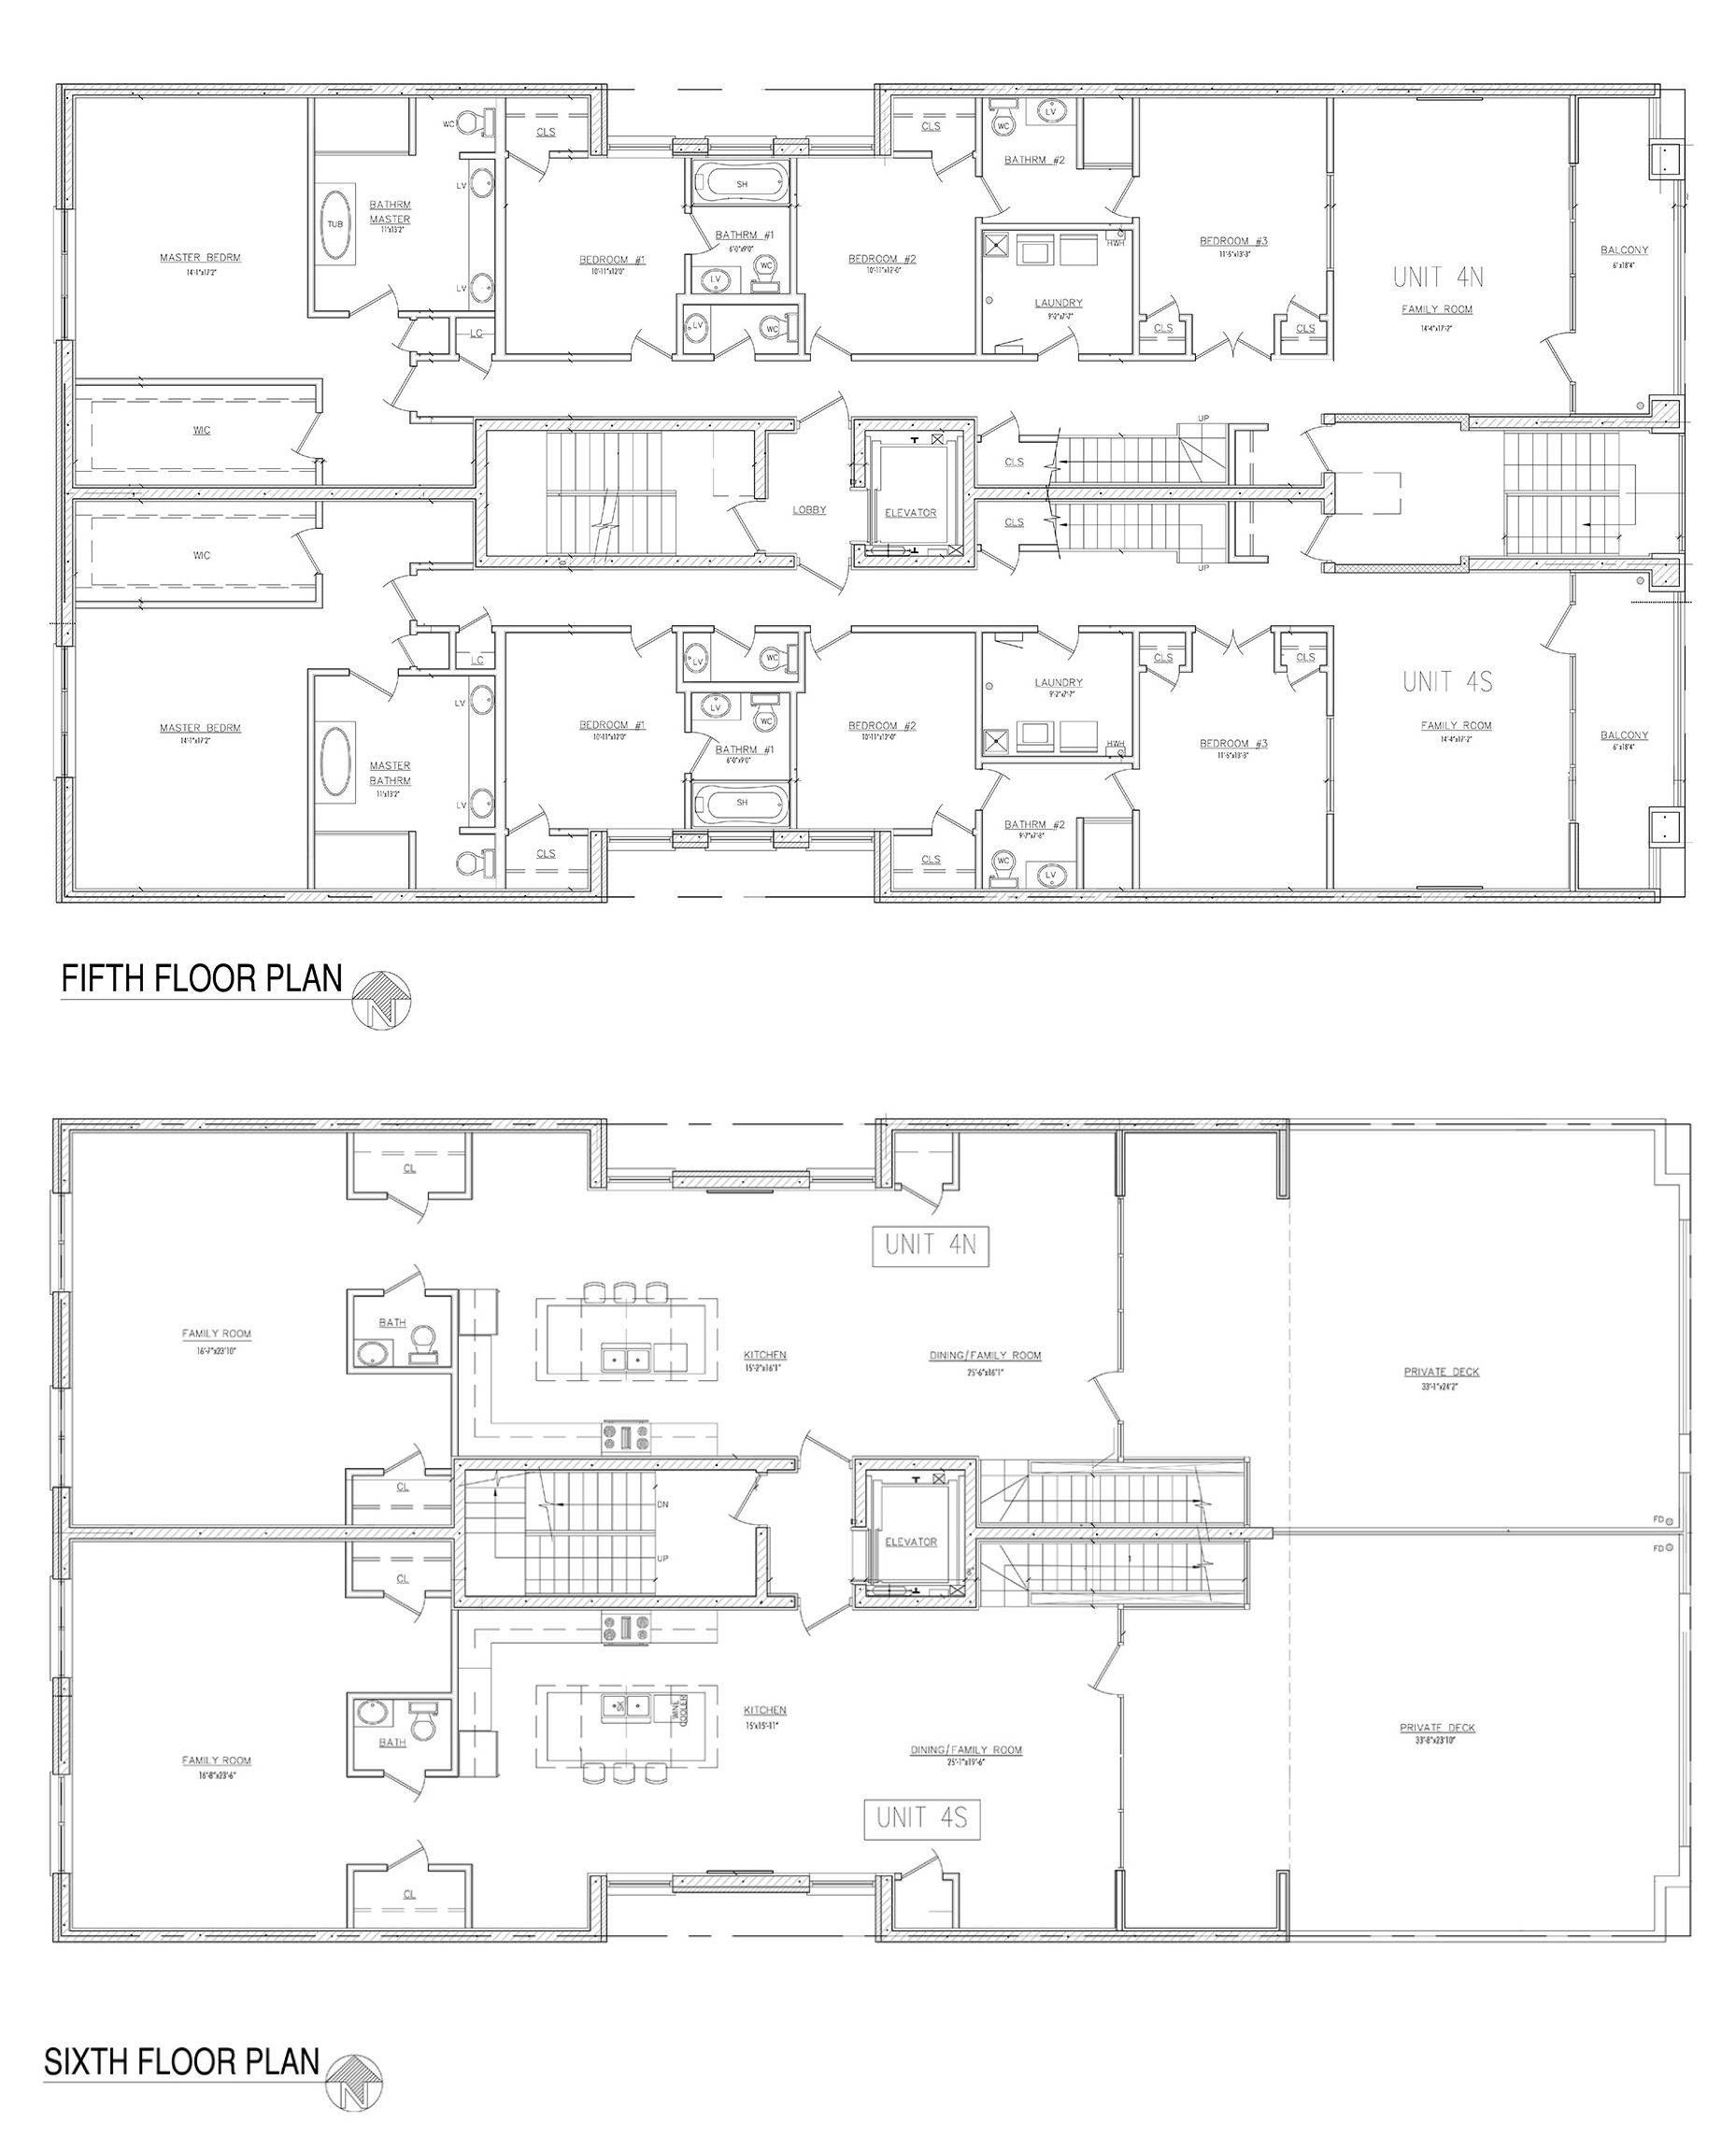 West Loop Collection's penthouse duplex floor plans